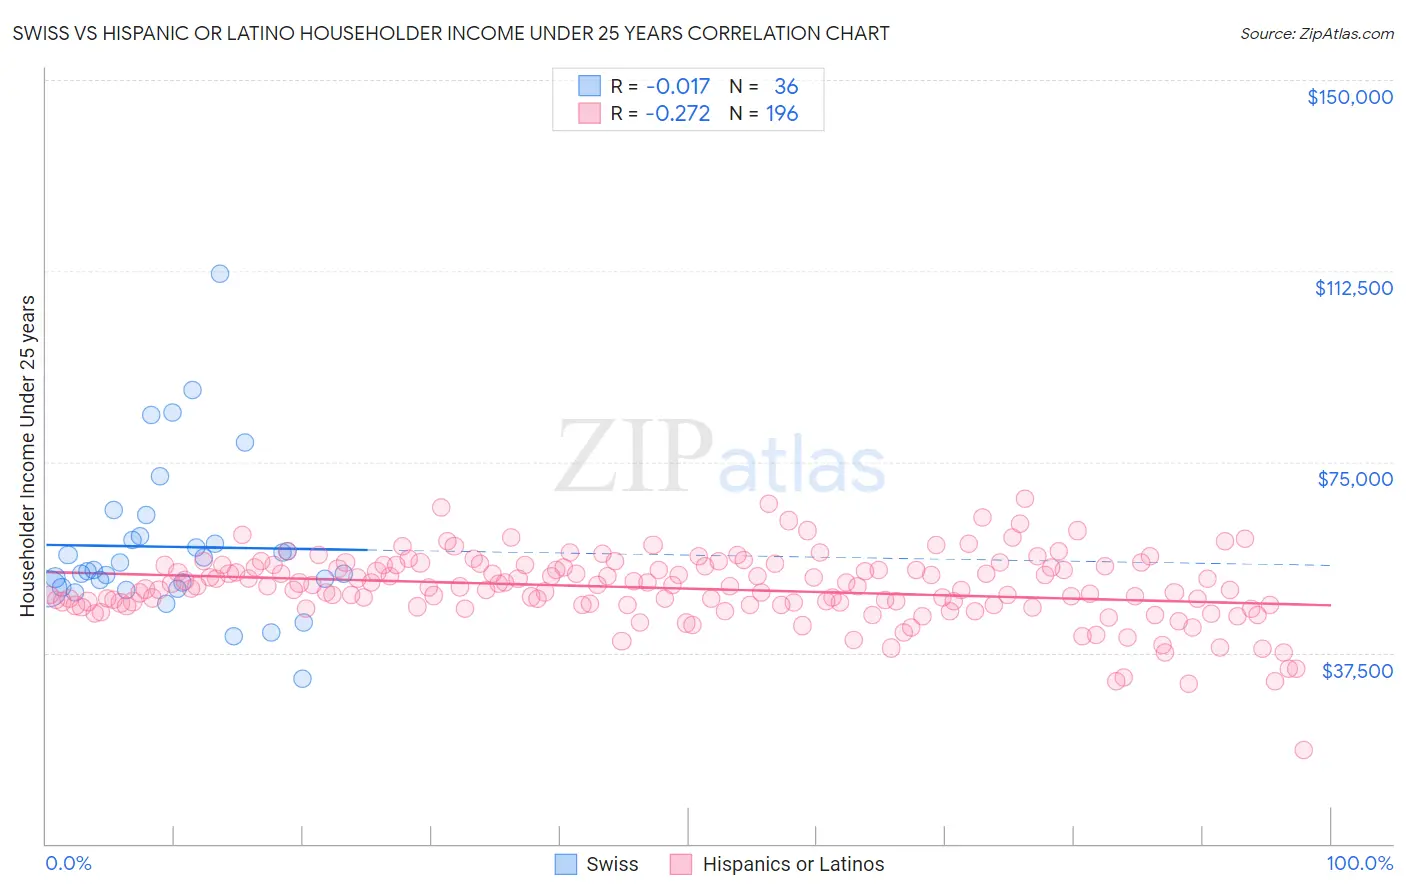 Swiss vs Hispanic or Latino Householder Income Under 25 years